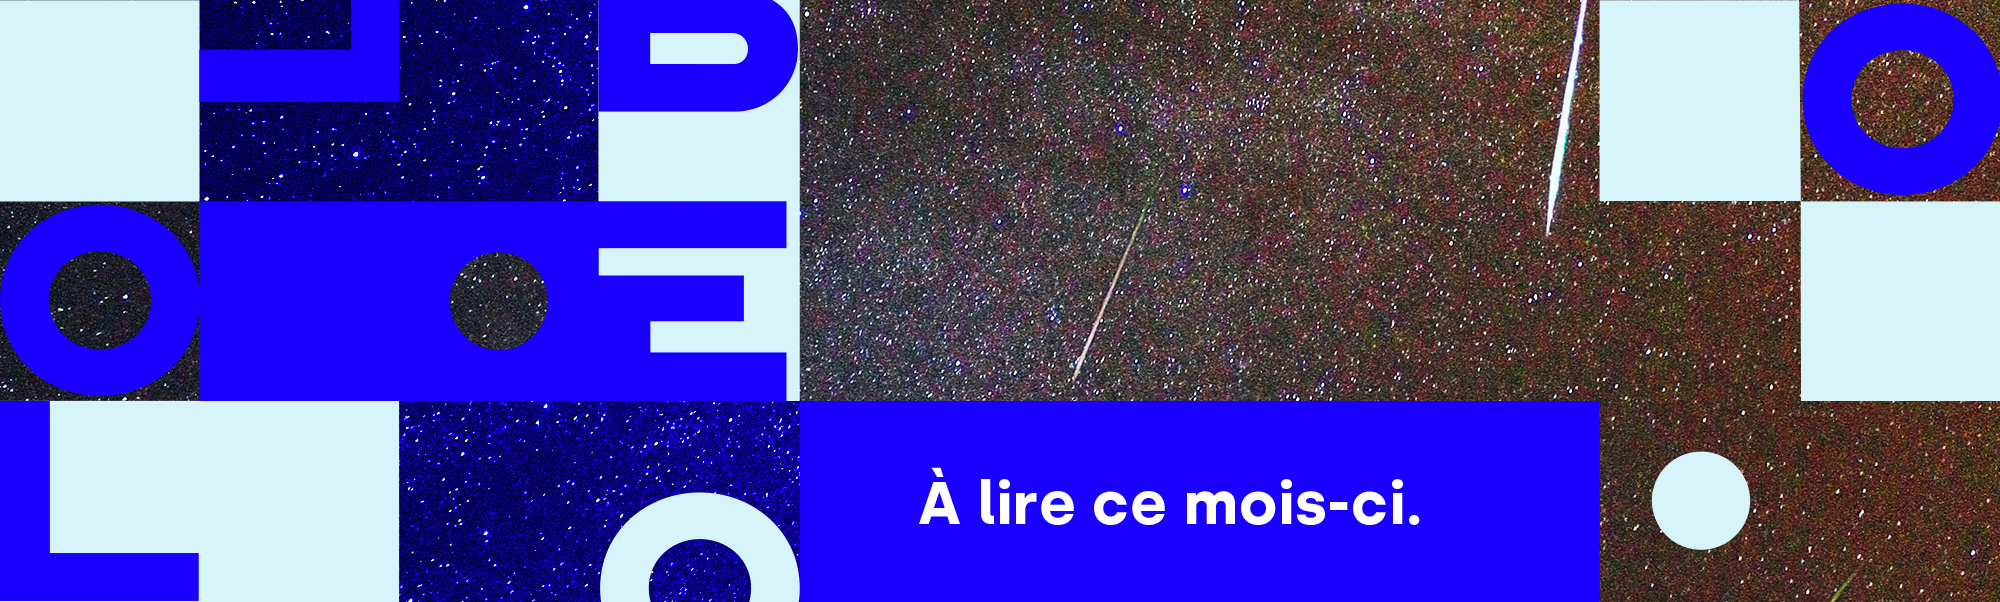 Bannière avec le nom de Libéo et l'image d'étoiles filantes pour illustrer l'infolettre de août 2020